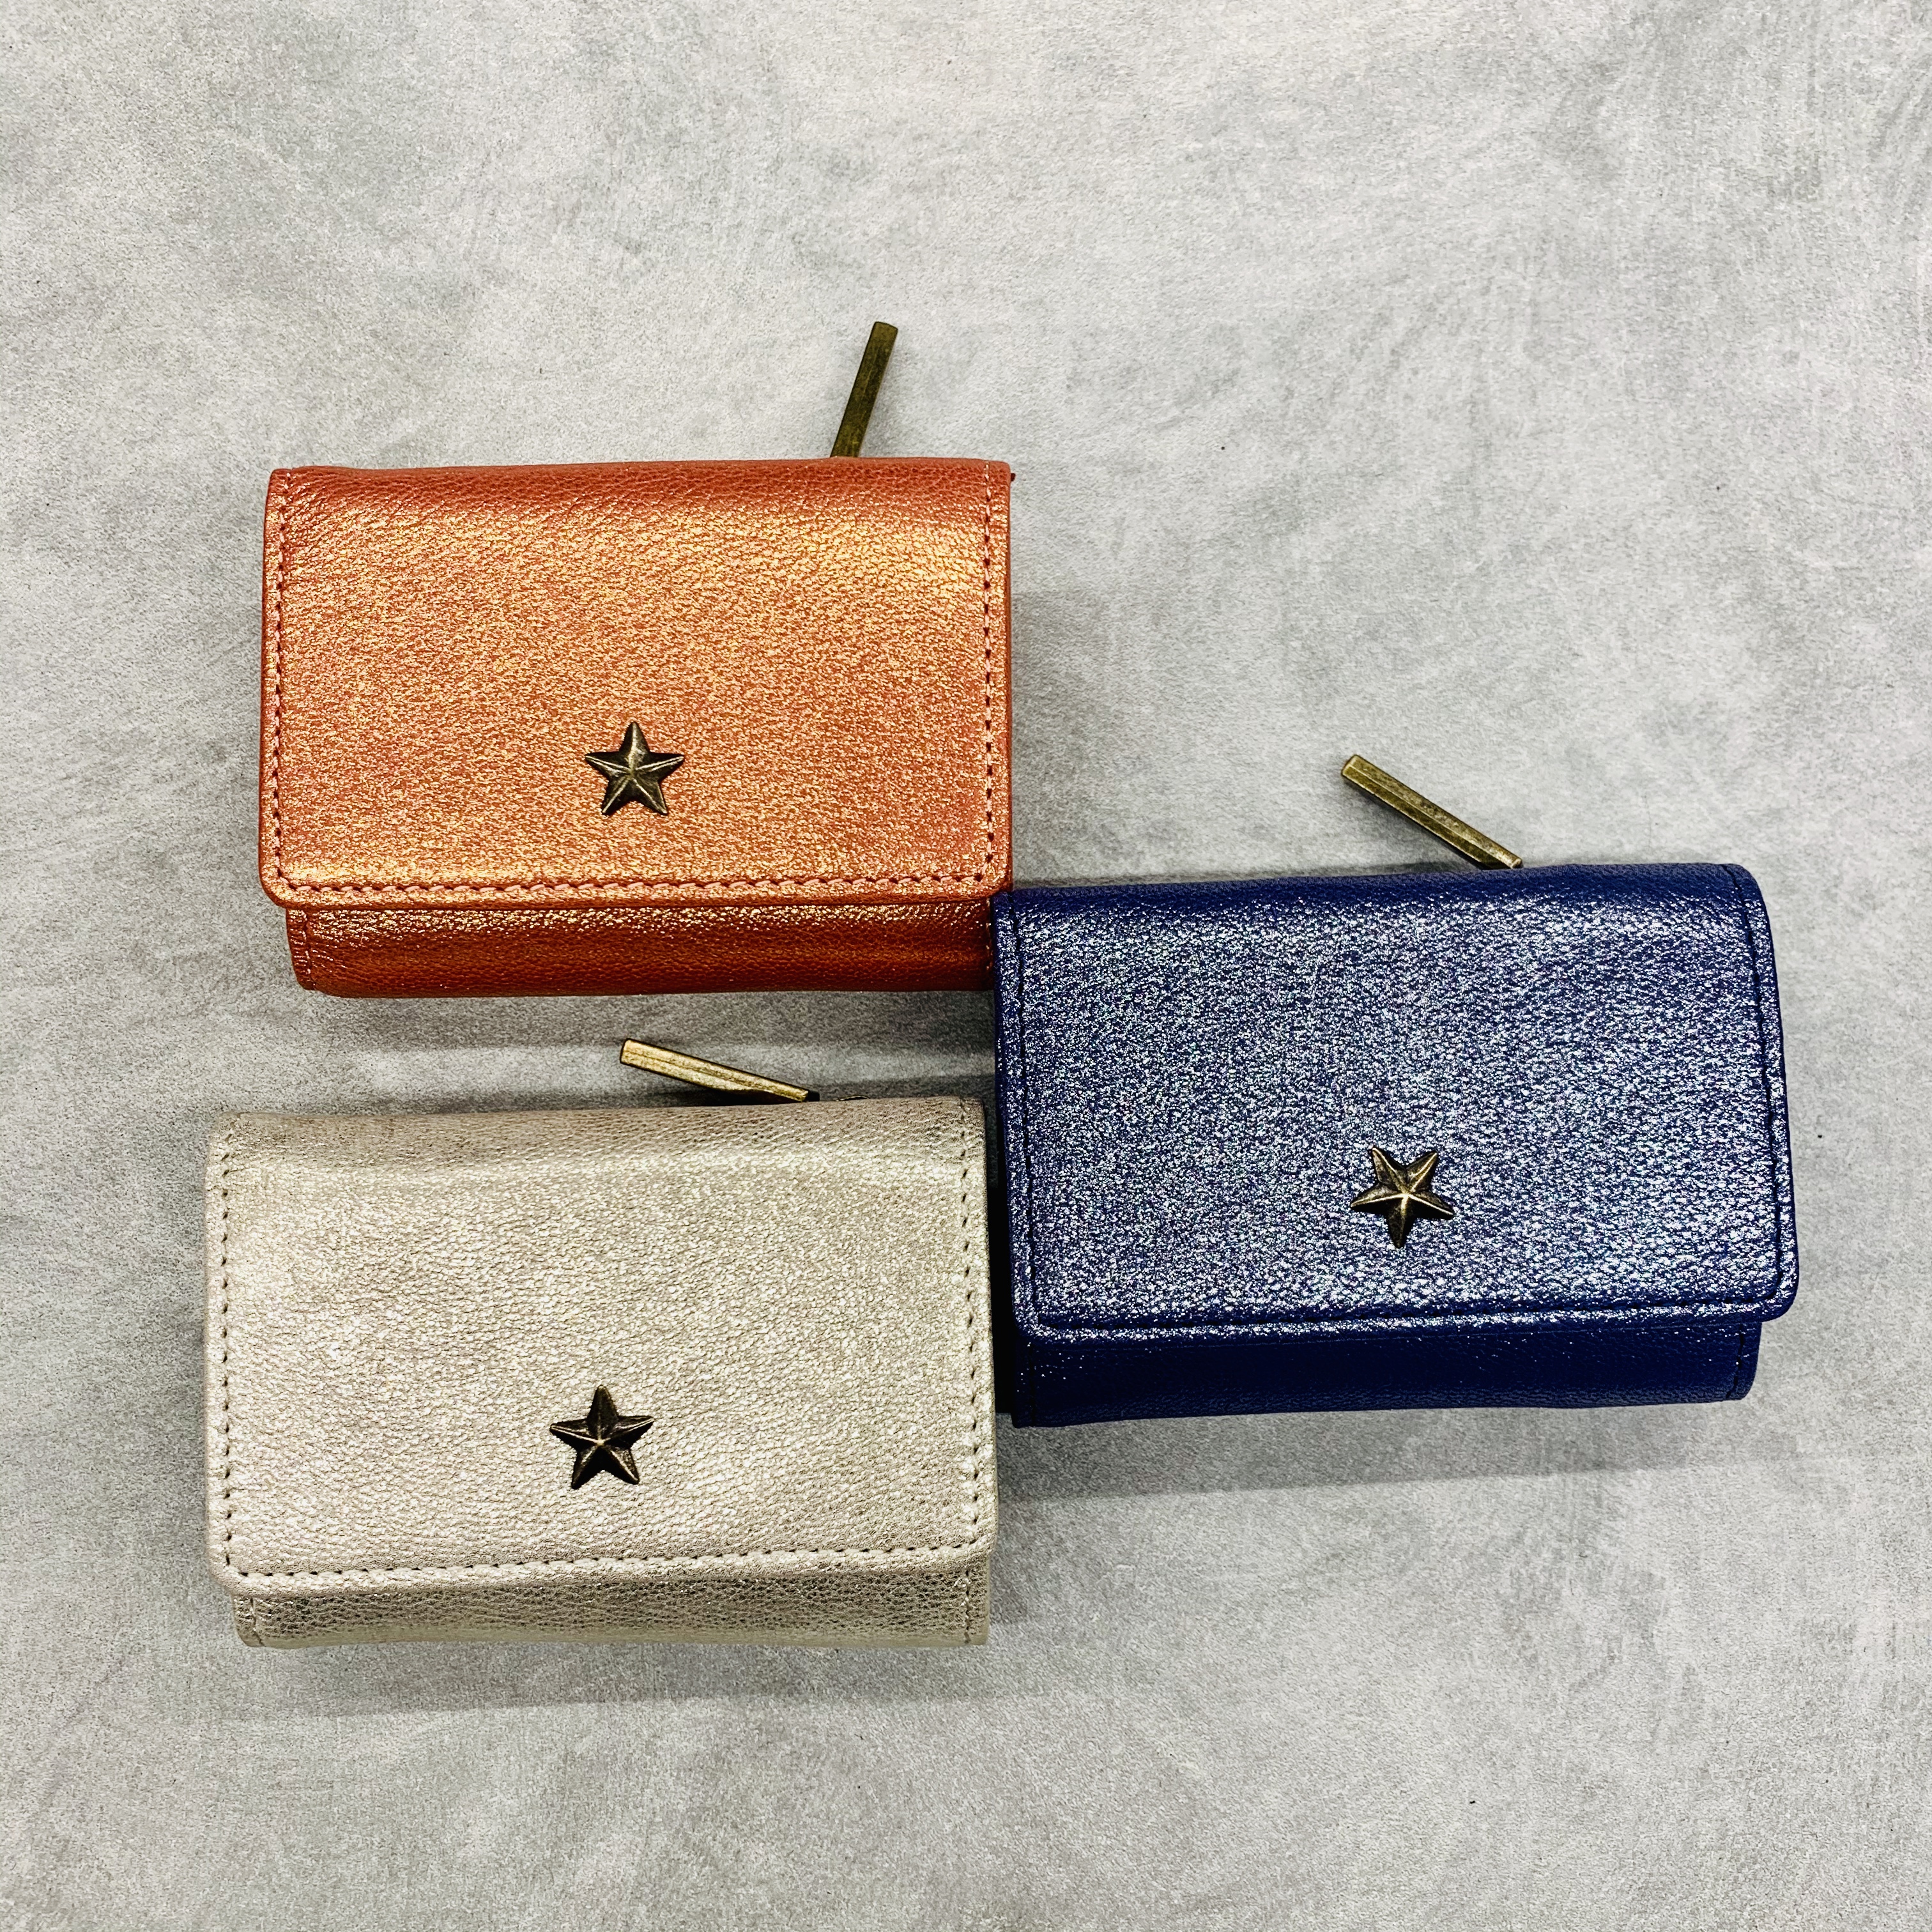 スクラップブック 渋谷 ヒカリエ 財布 ウォレット ミニ財布 小さめ 3つ折り コンパクト